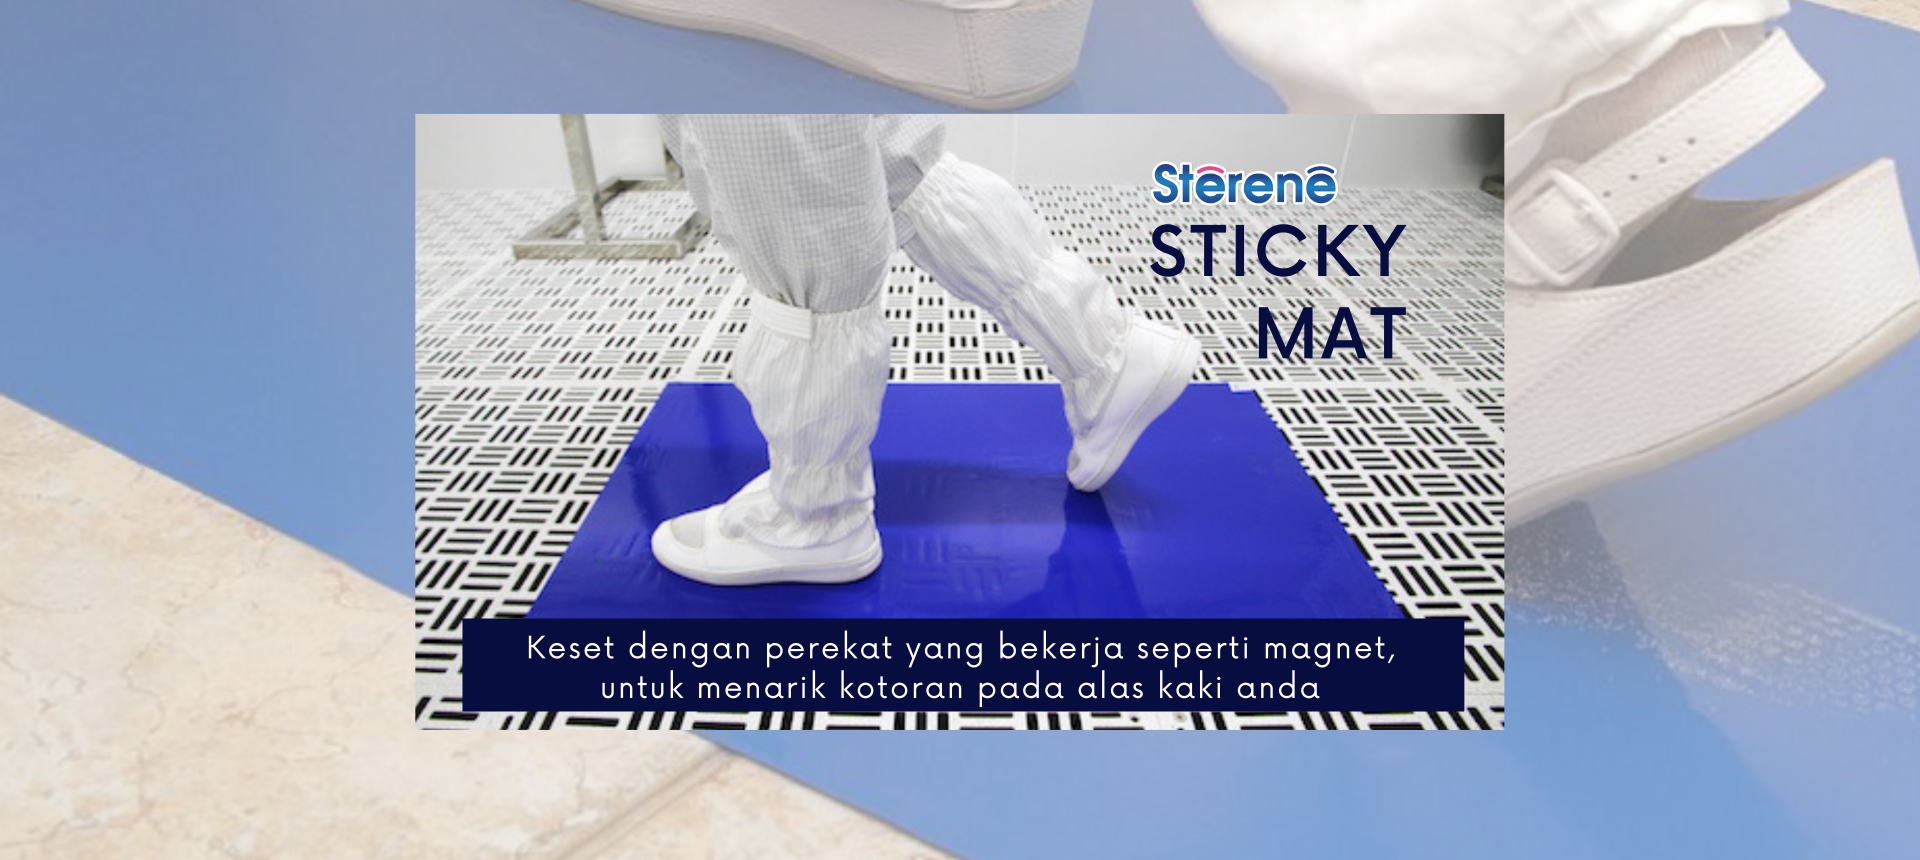 Sterene Sticky Mat